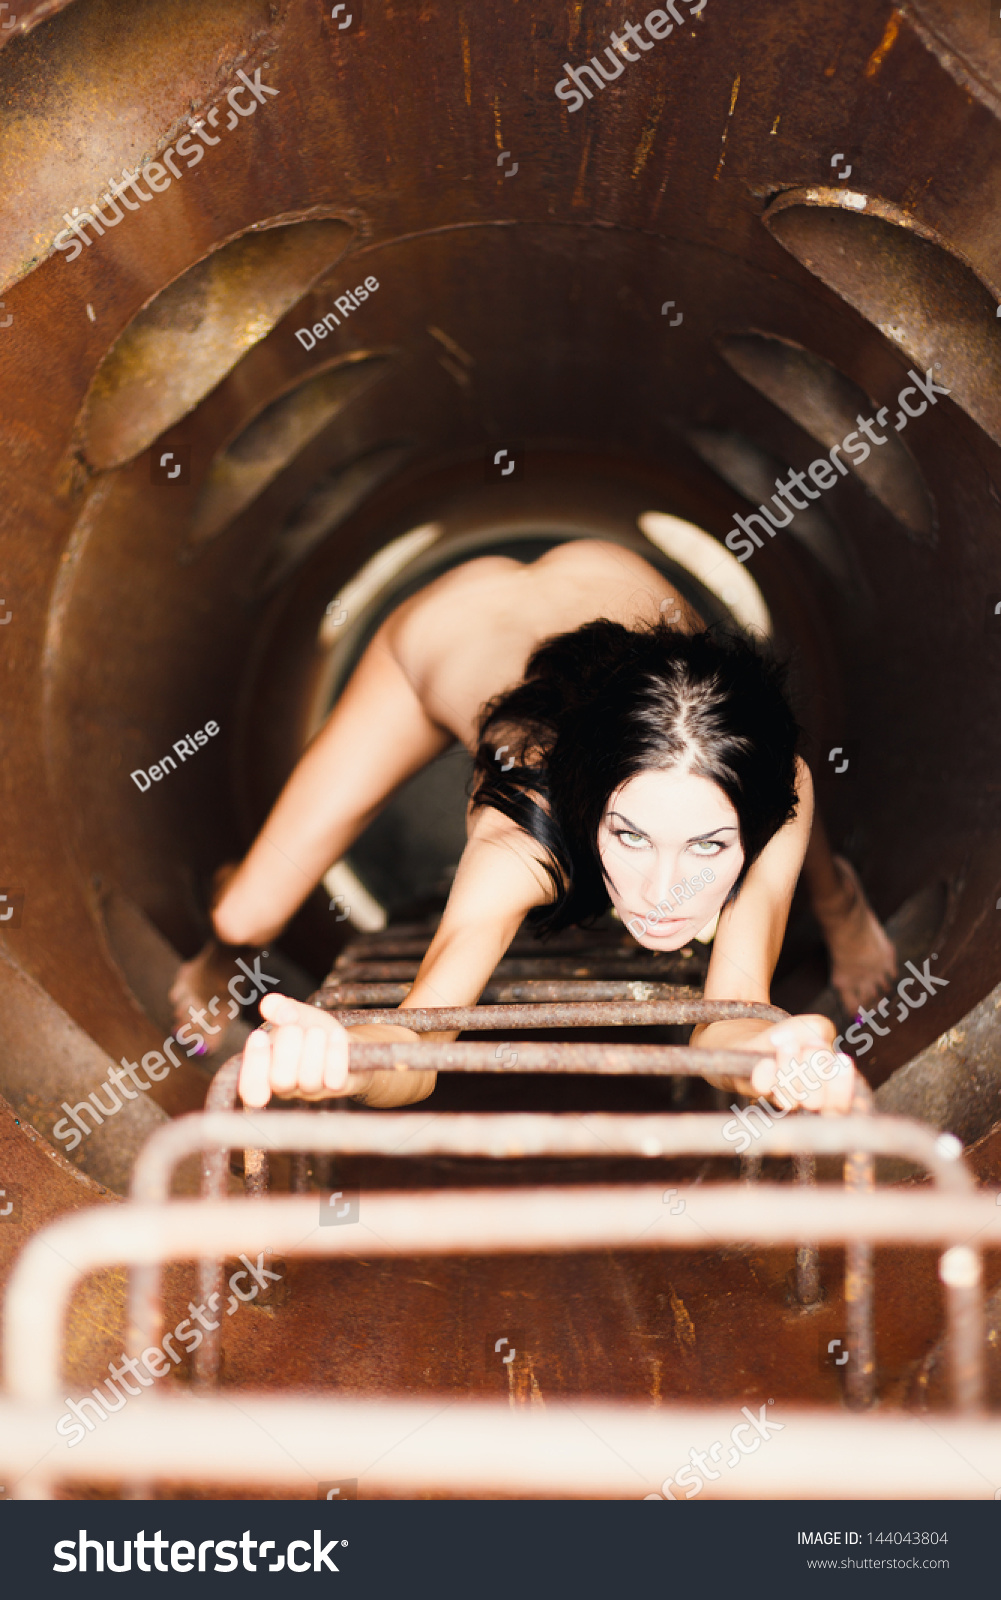 Tube naked girl 